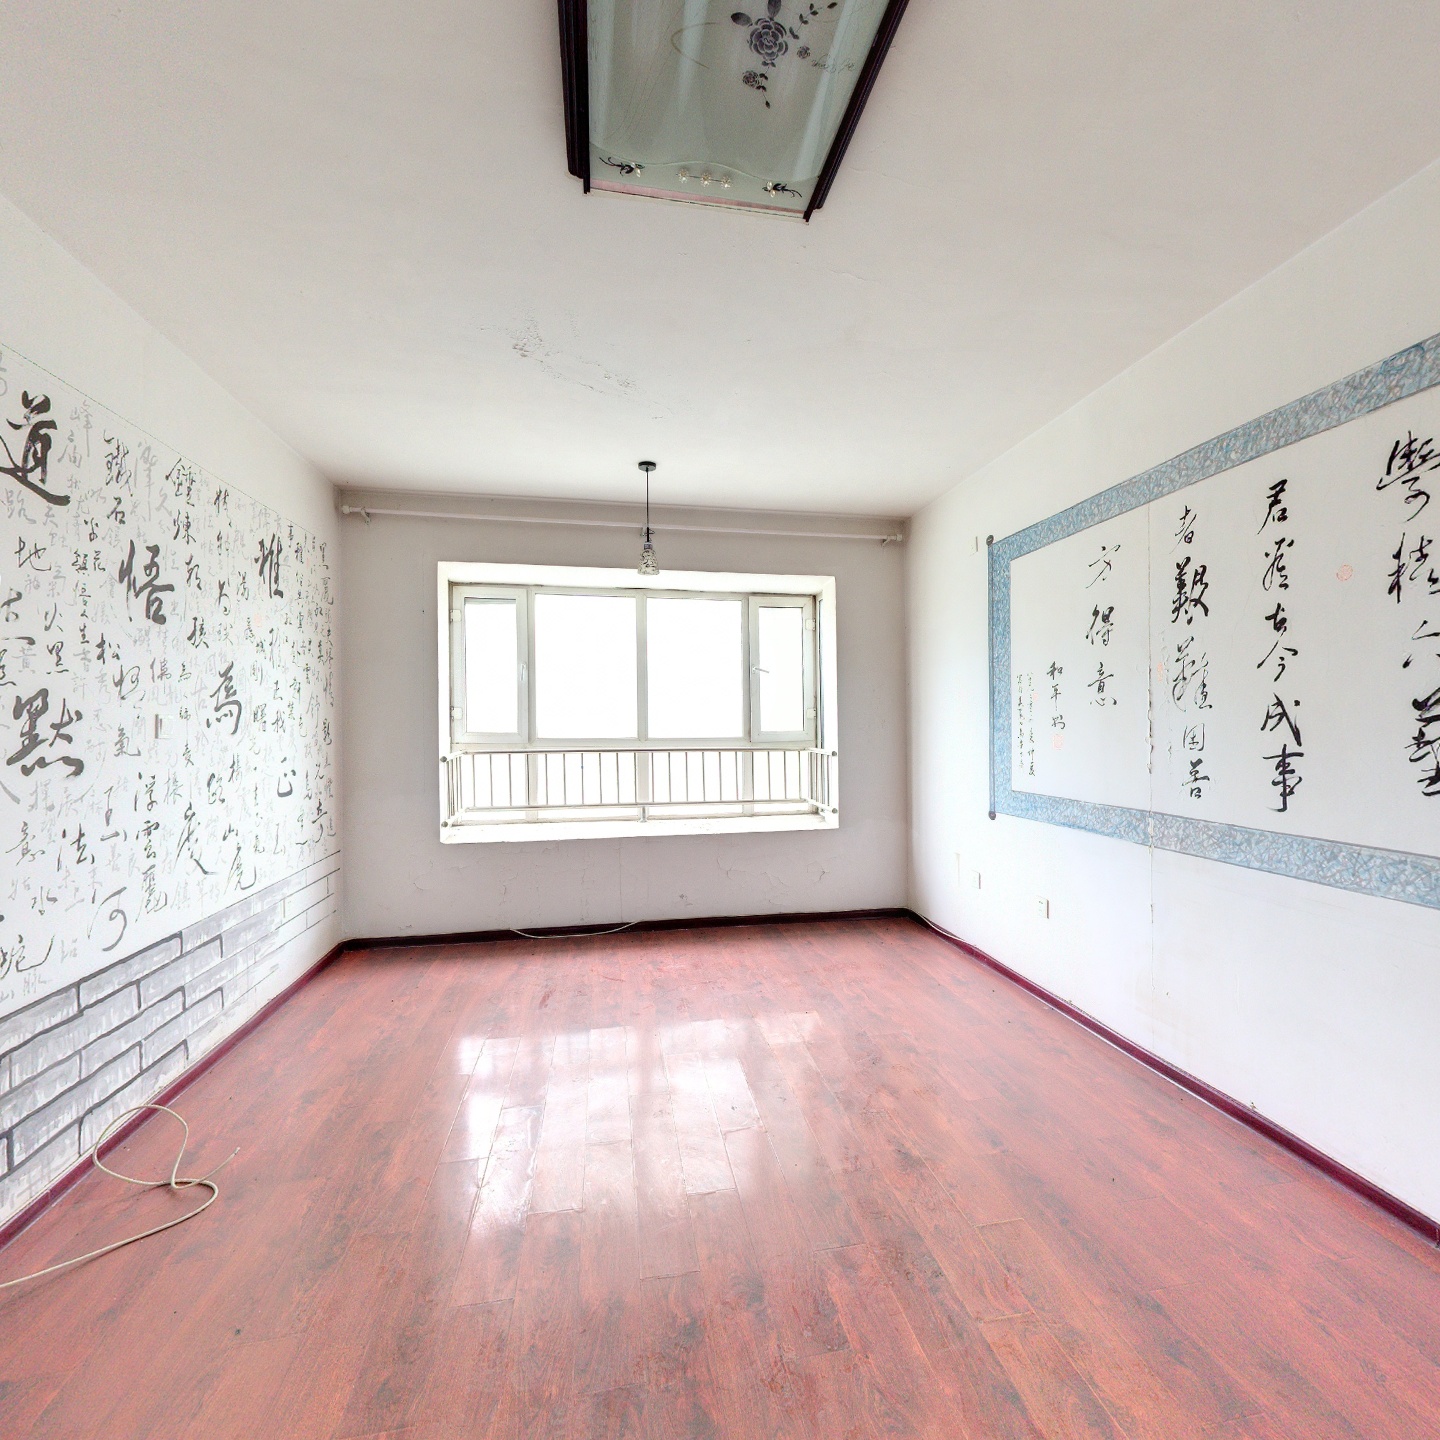 北京路植物园三室电梯房 一梯两户 精装 南北通透